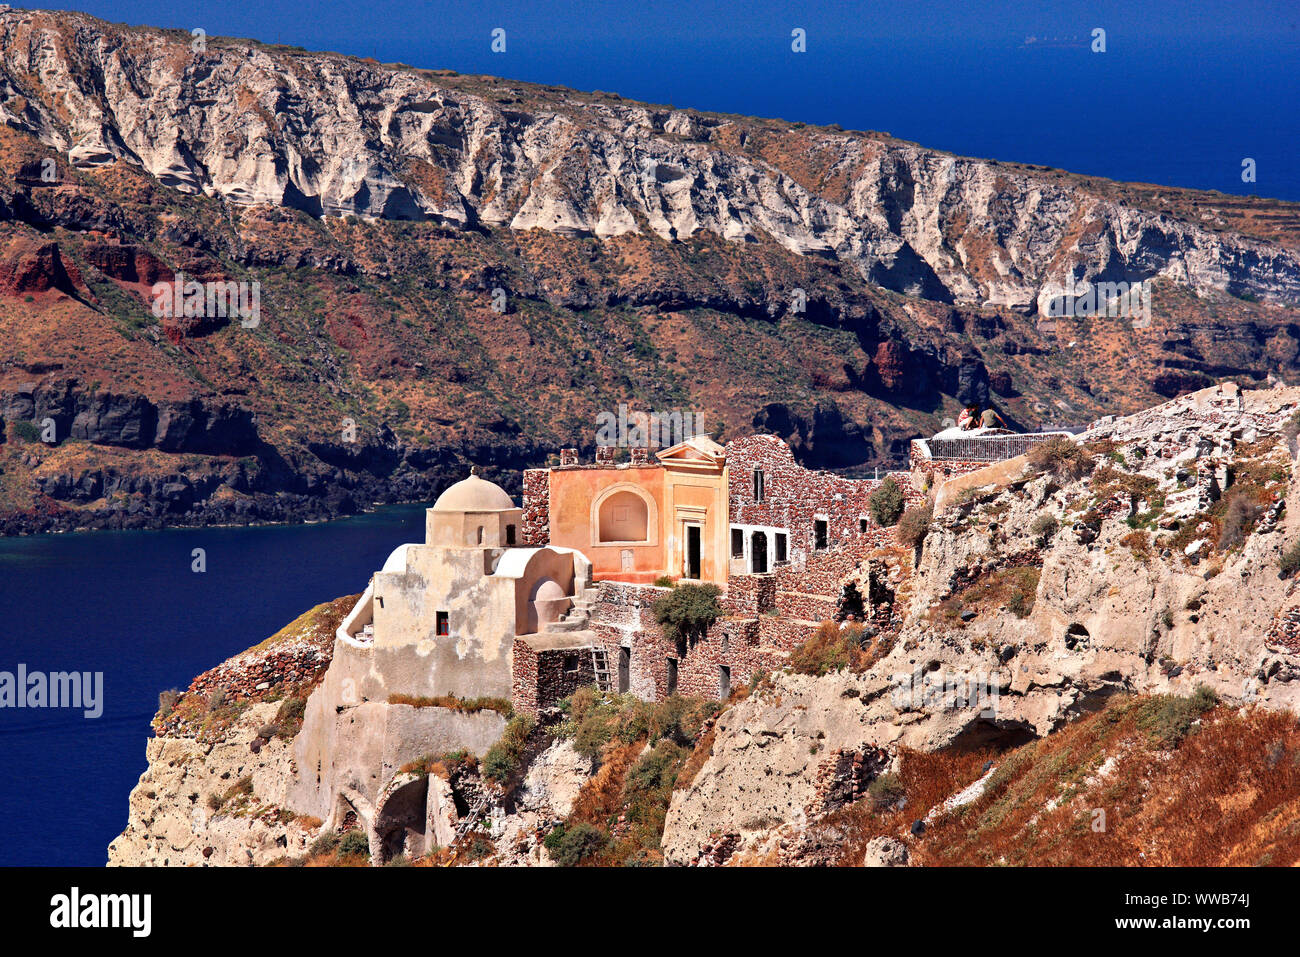 La chiesa di San Nicola a destra sopra la caldera sul bordo del villaggio di Oia, Cicladi Mar Egeo. In background, Thirassia; isola. Foto Stock